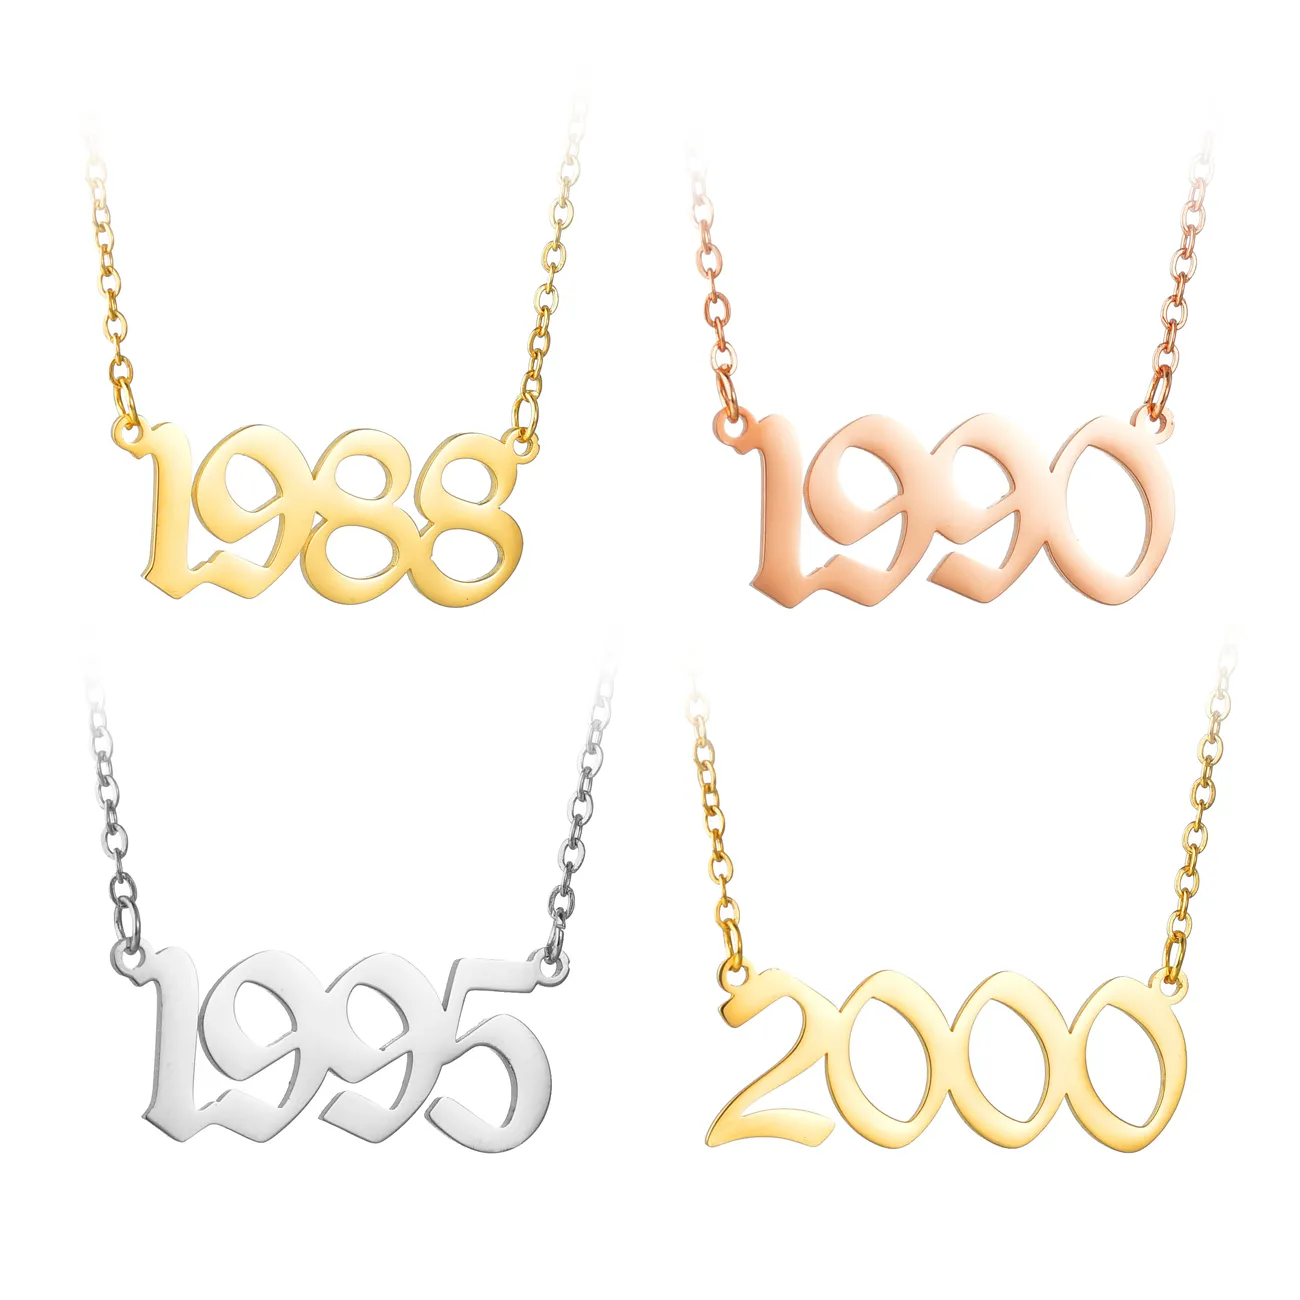 Regalo di compleanno collana con numeri arabi personalizzati in acciaio inossidabile placcato oro 18 carati con anno di nascita